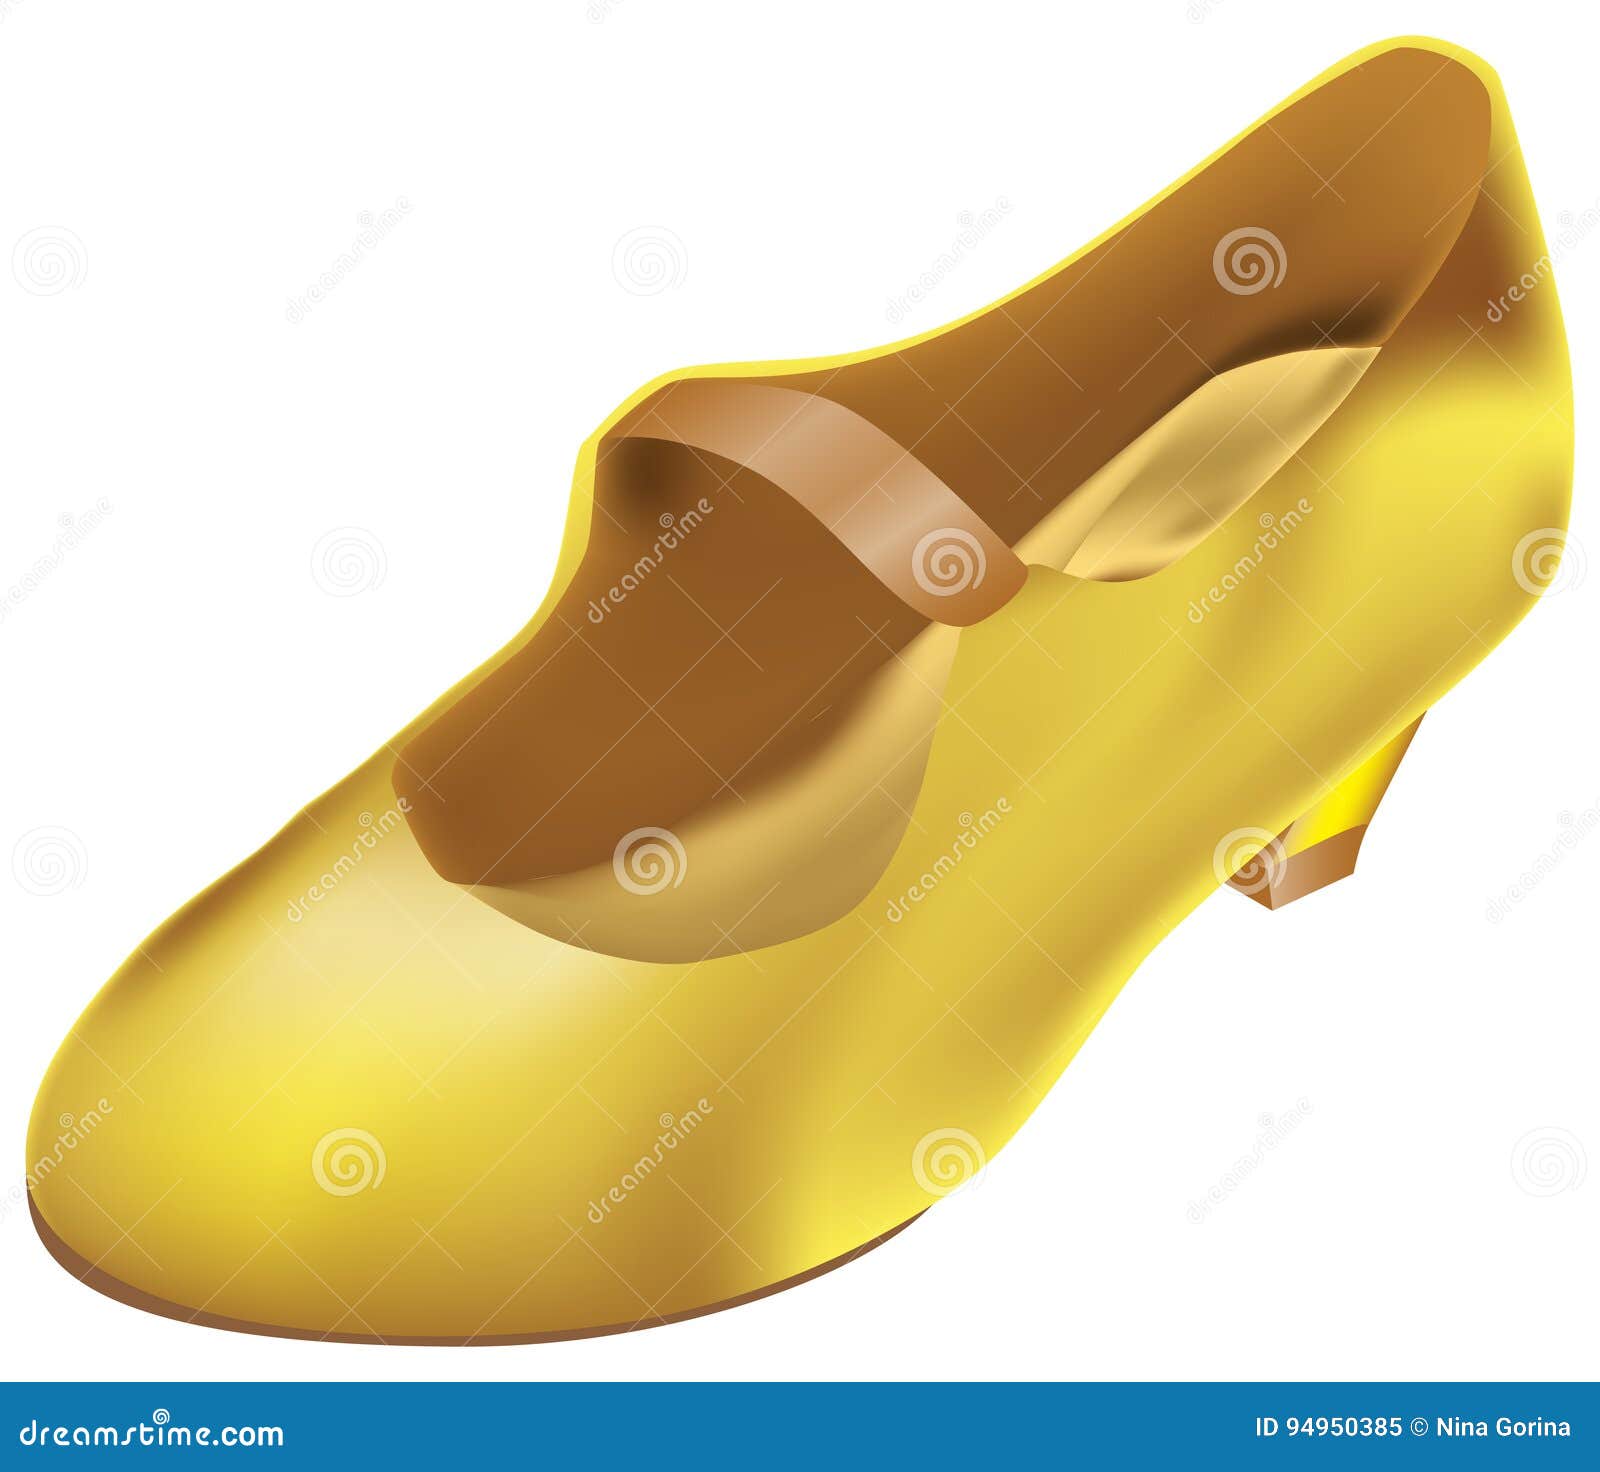 cinderella shoes cartoon